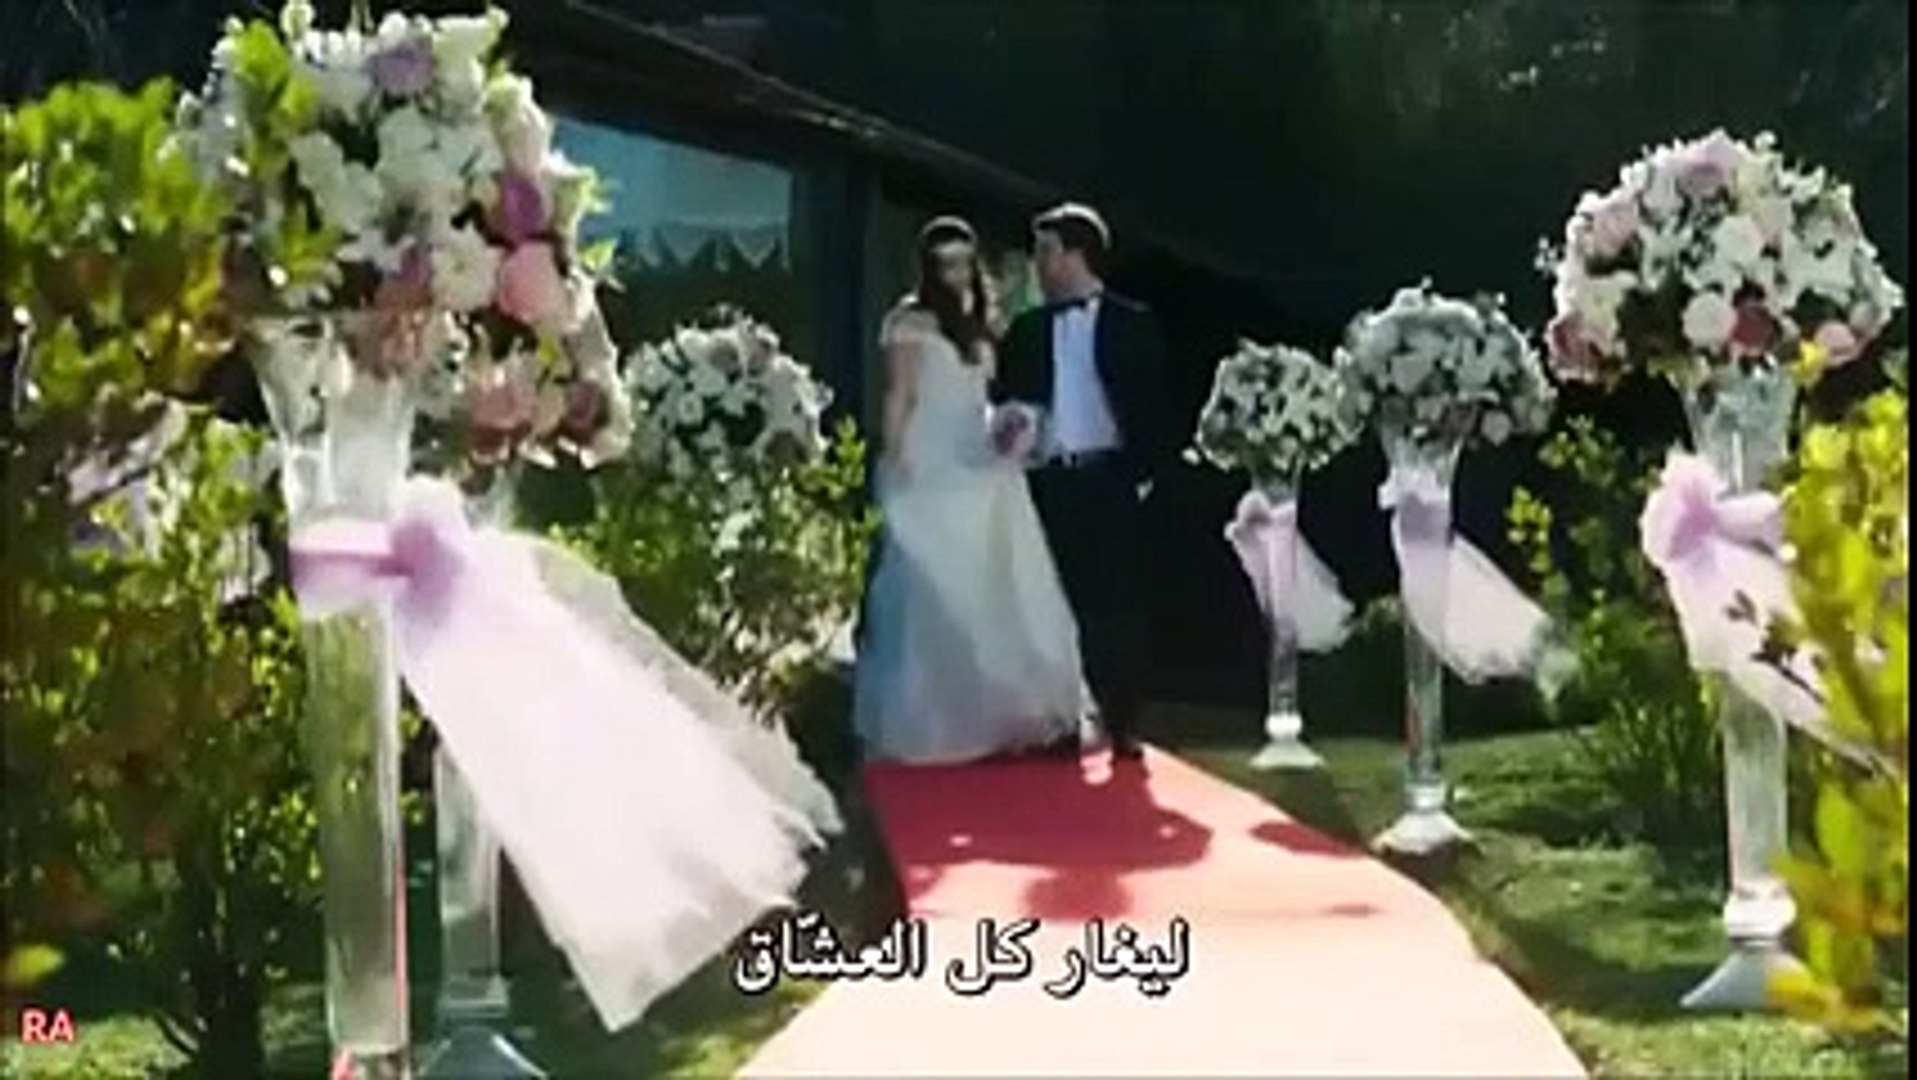 زواج علي وسيلين #مسلسل بنات الشمس مشهد جميل - video Dailymotion